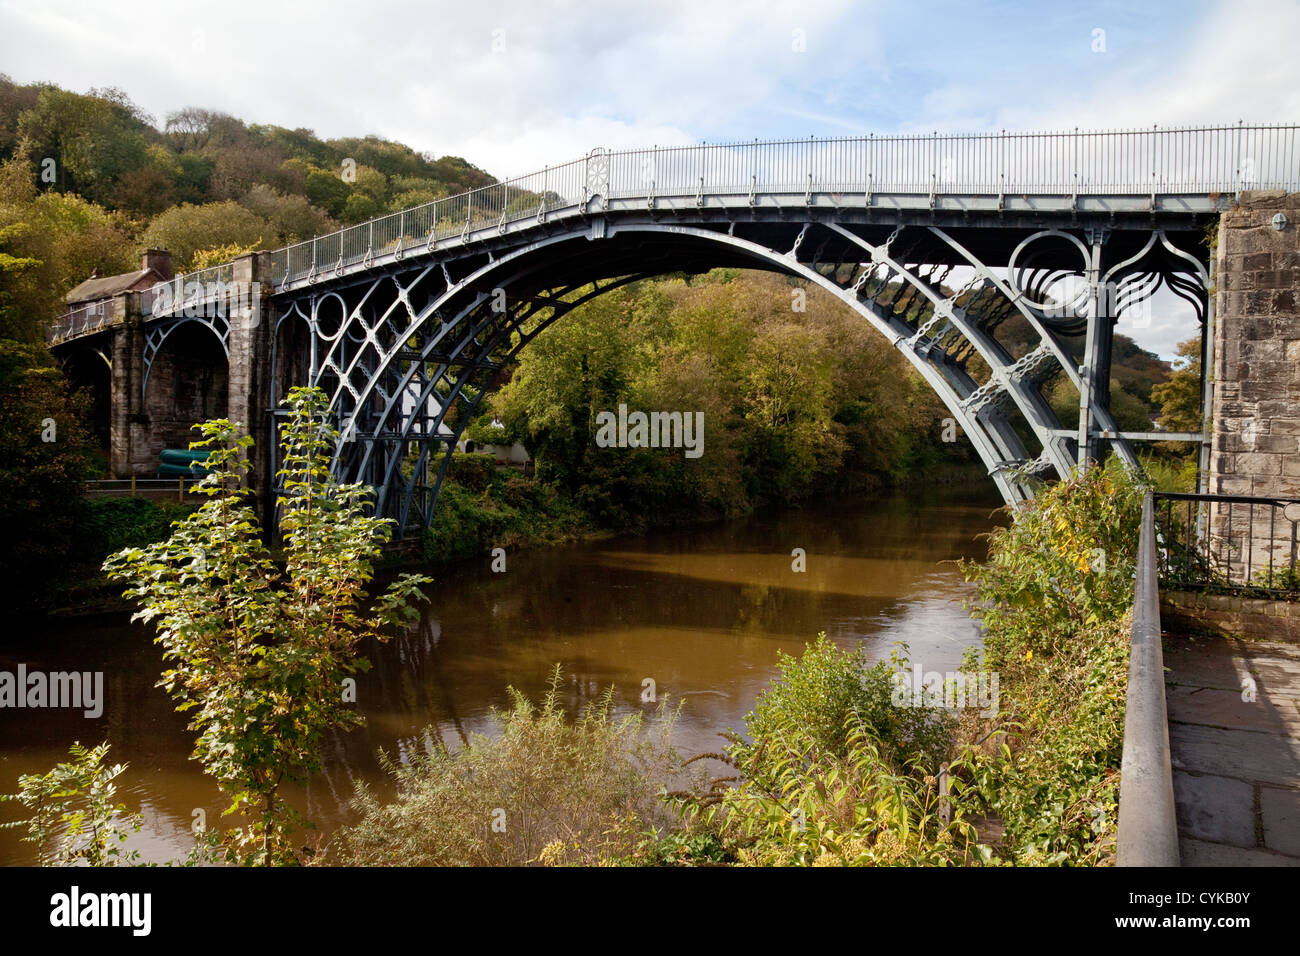 The famous 18th century iron bridge at Ironbridge World Heritage site, Shropshire UK Stock Photo